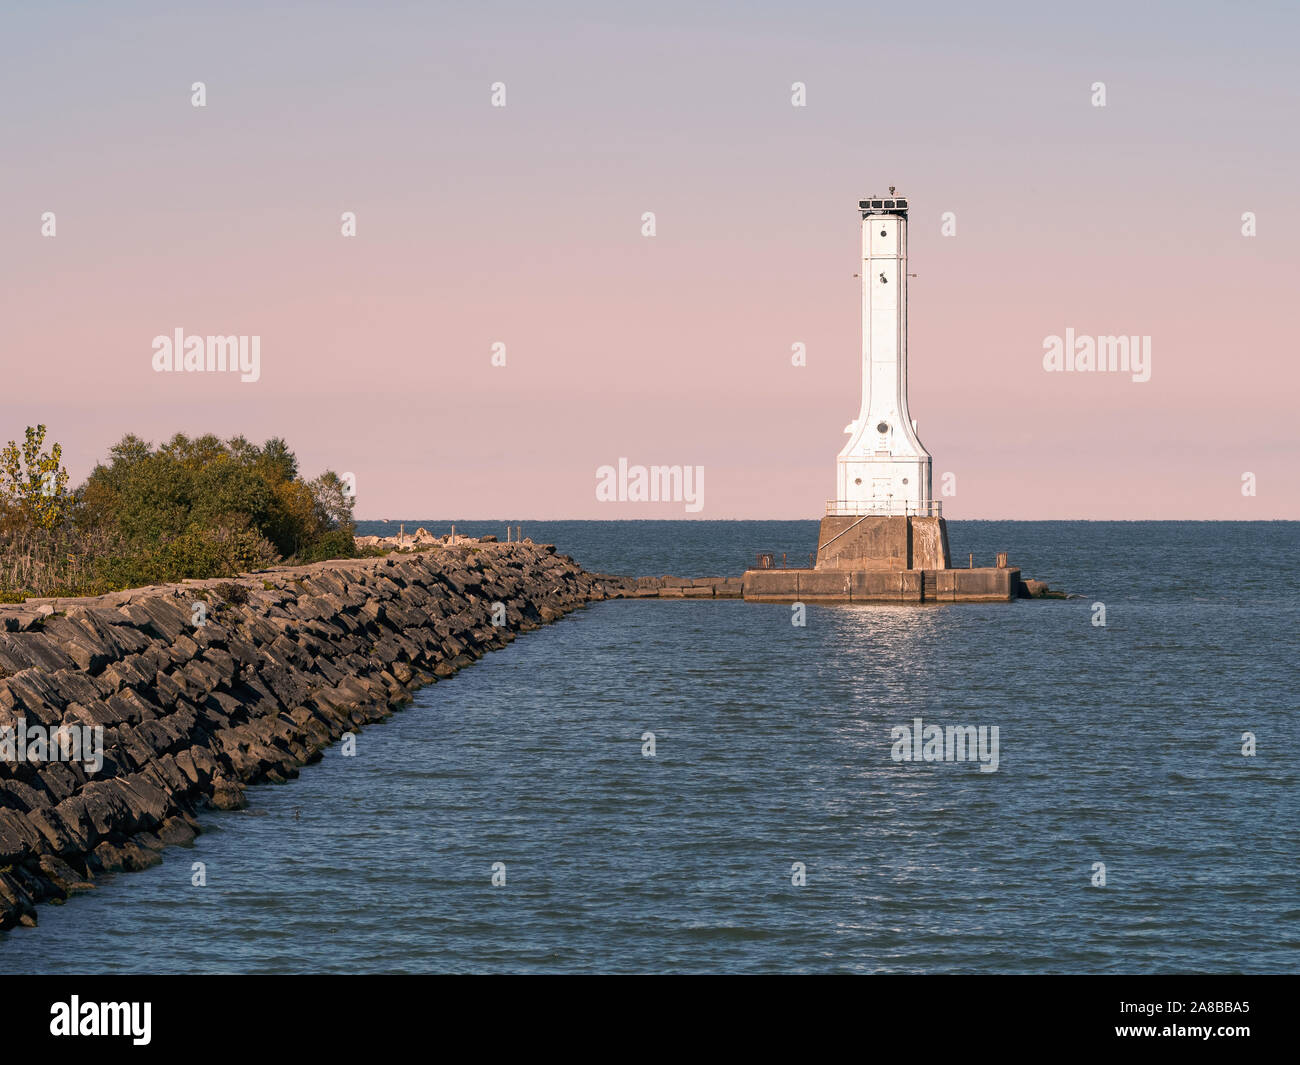 Huron Hafen Leuchtturm am Erie See, pink Sky At Night, Sailor's Delight, Herbst 2018 bei Dämmerung. Im Art déco-Stil aus Stahl Light House 1939 Ohio gebaut Stockfoto